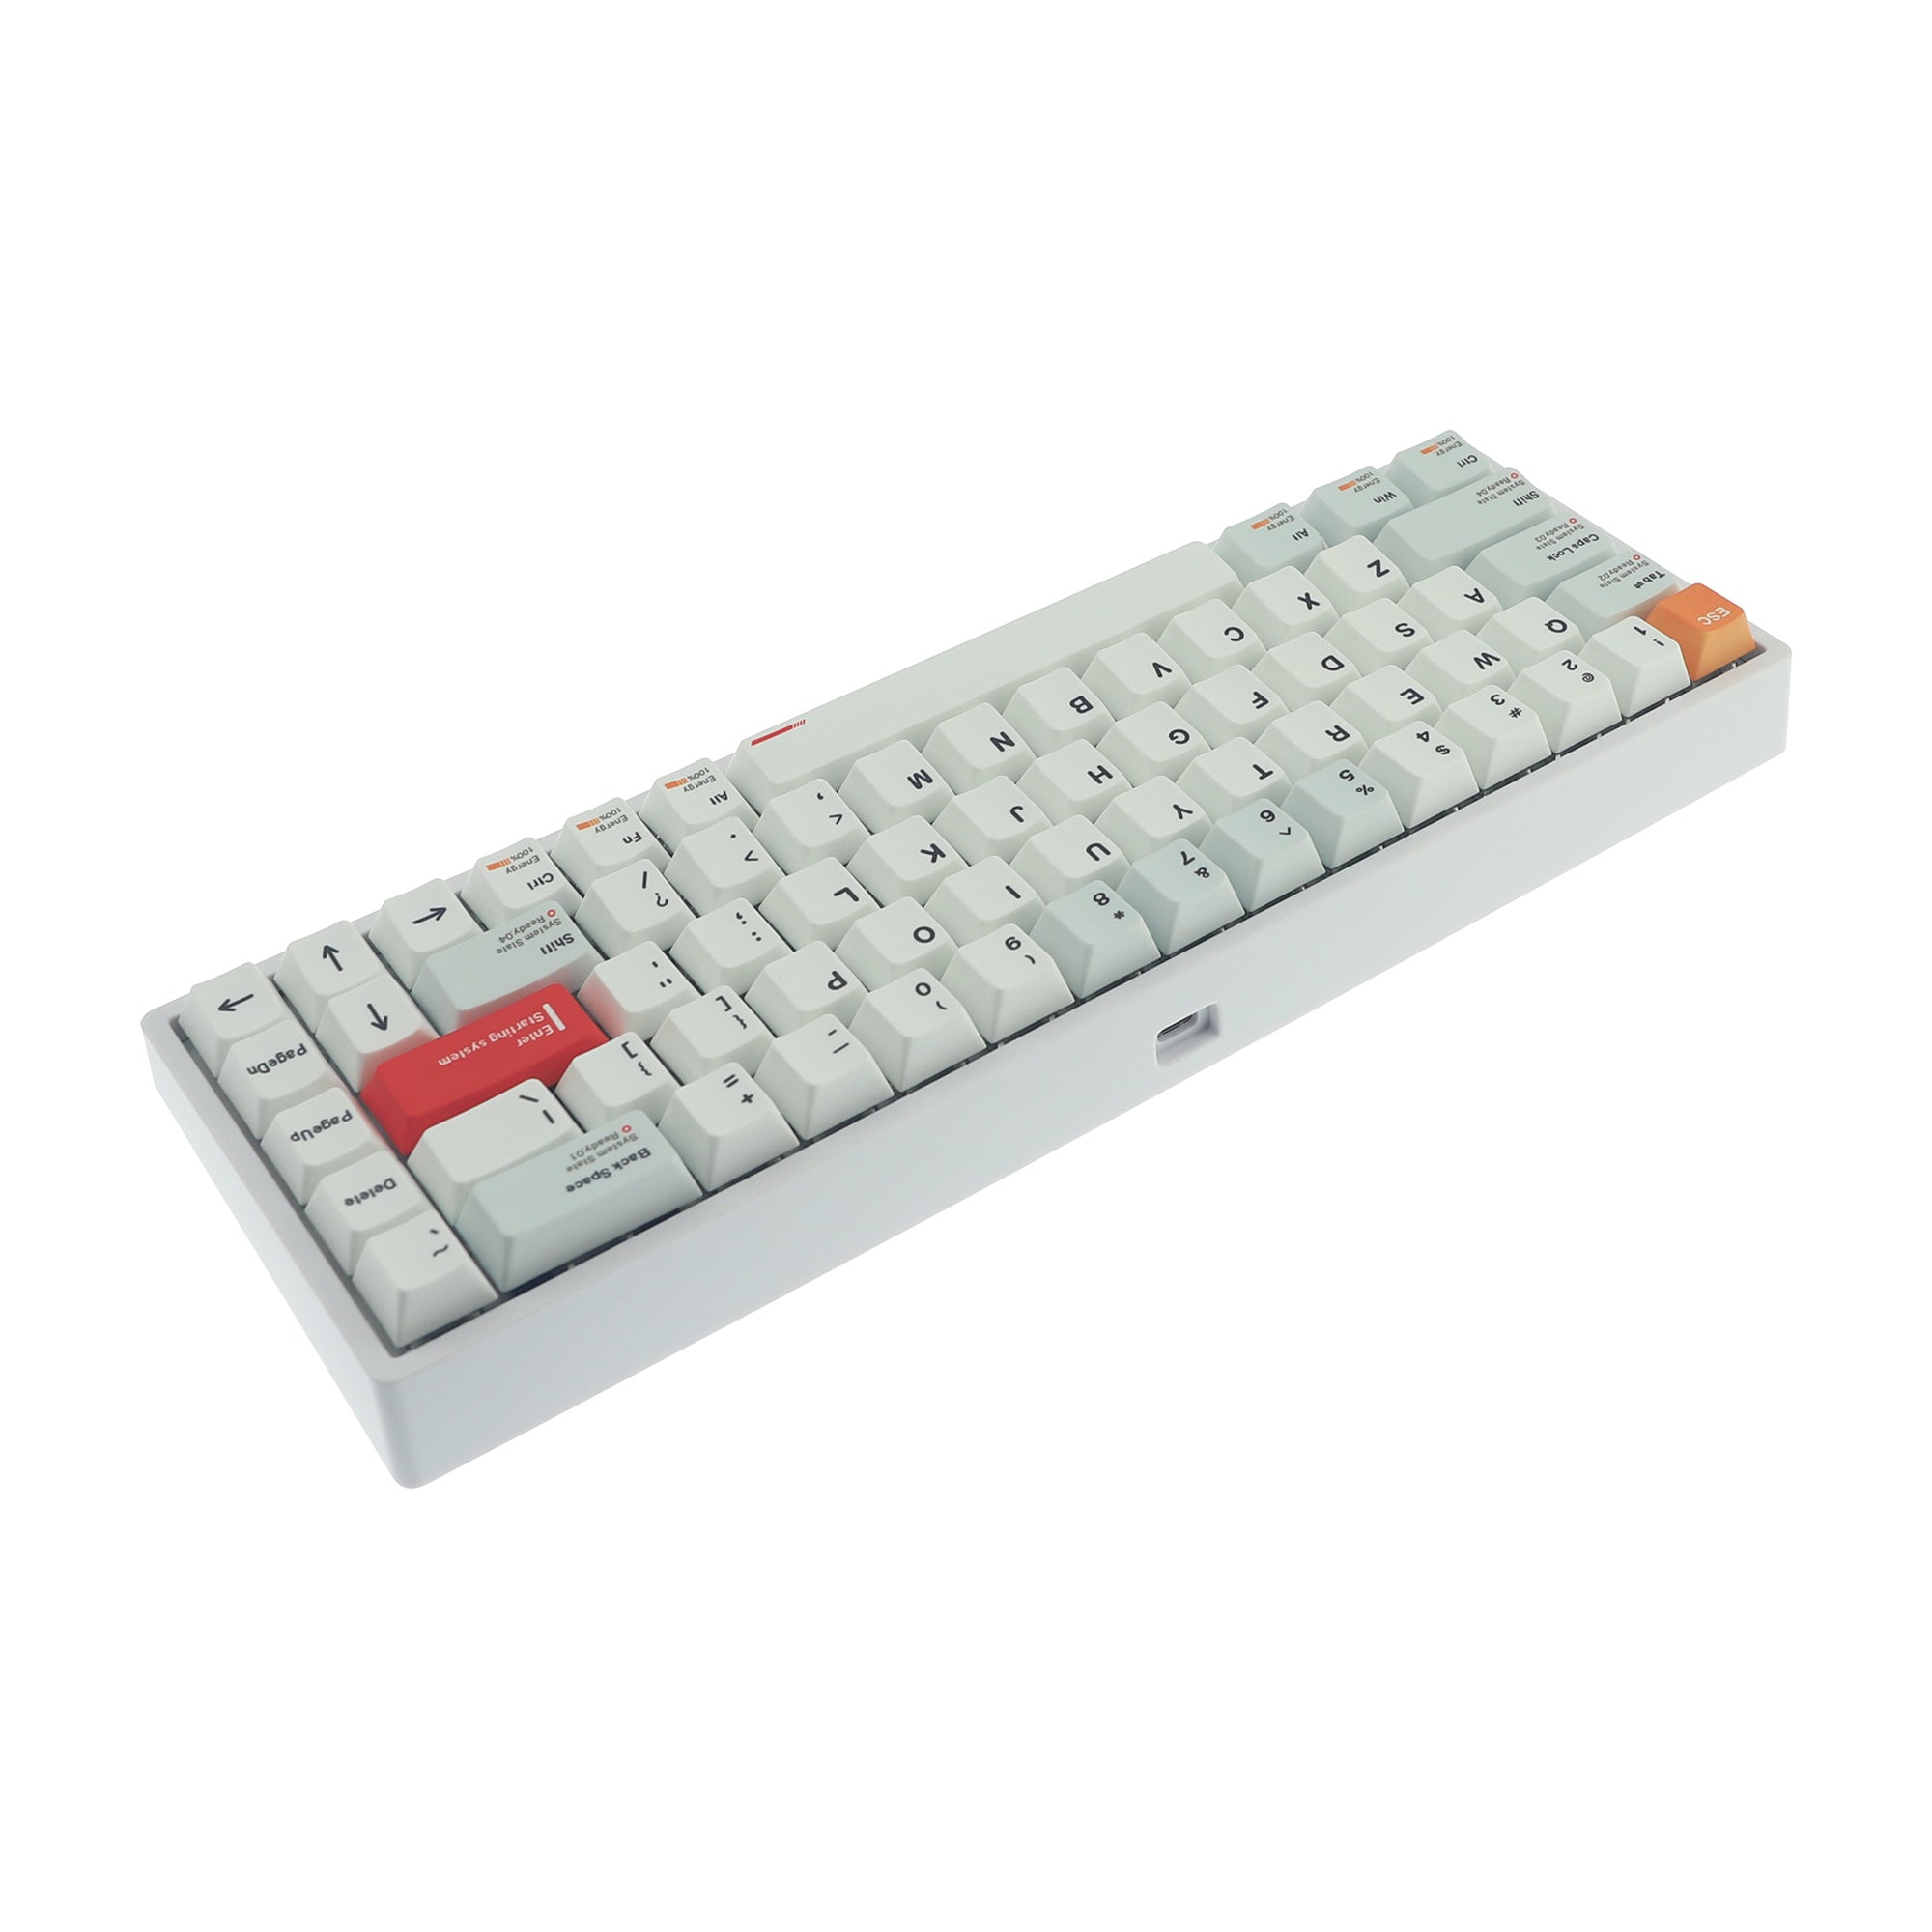 Pro Series Magnetic 65% Gaming Keyboard